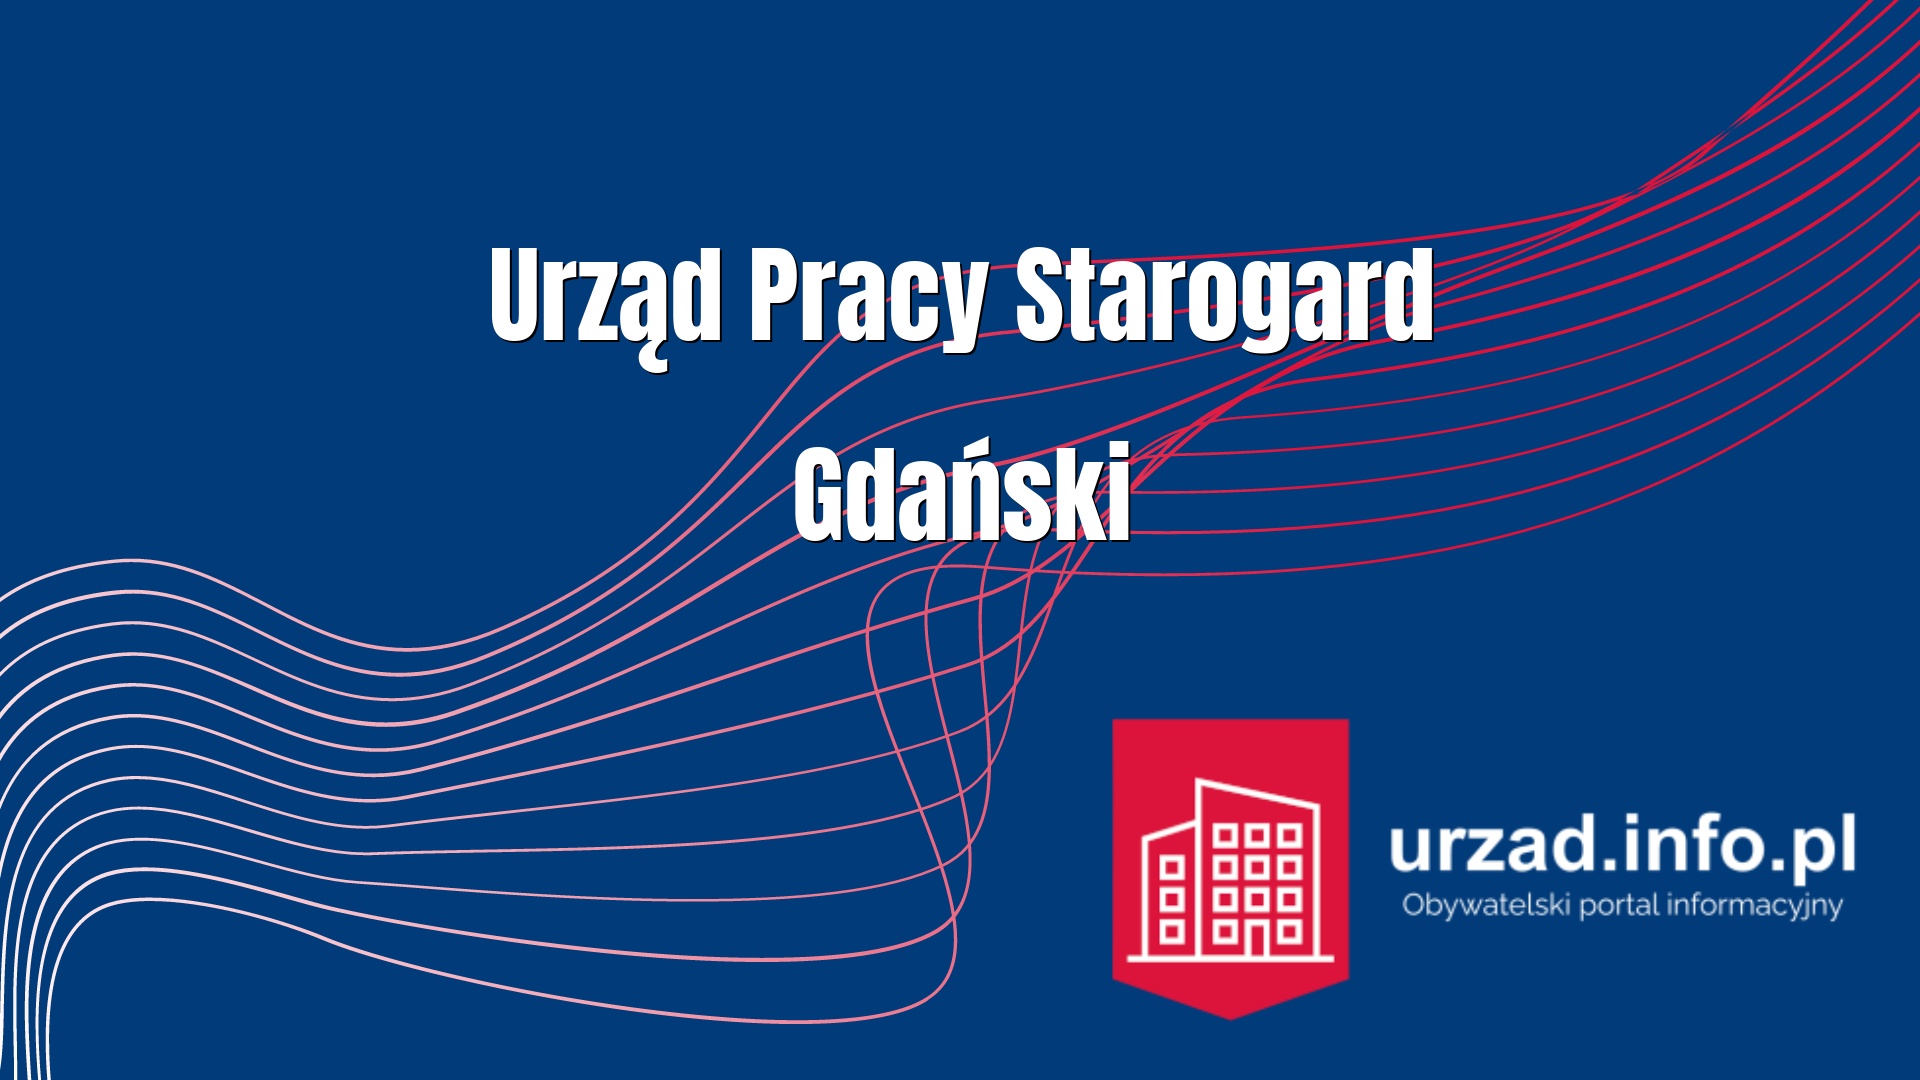 Urząd Pracy Starogard Gdański